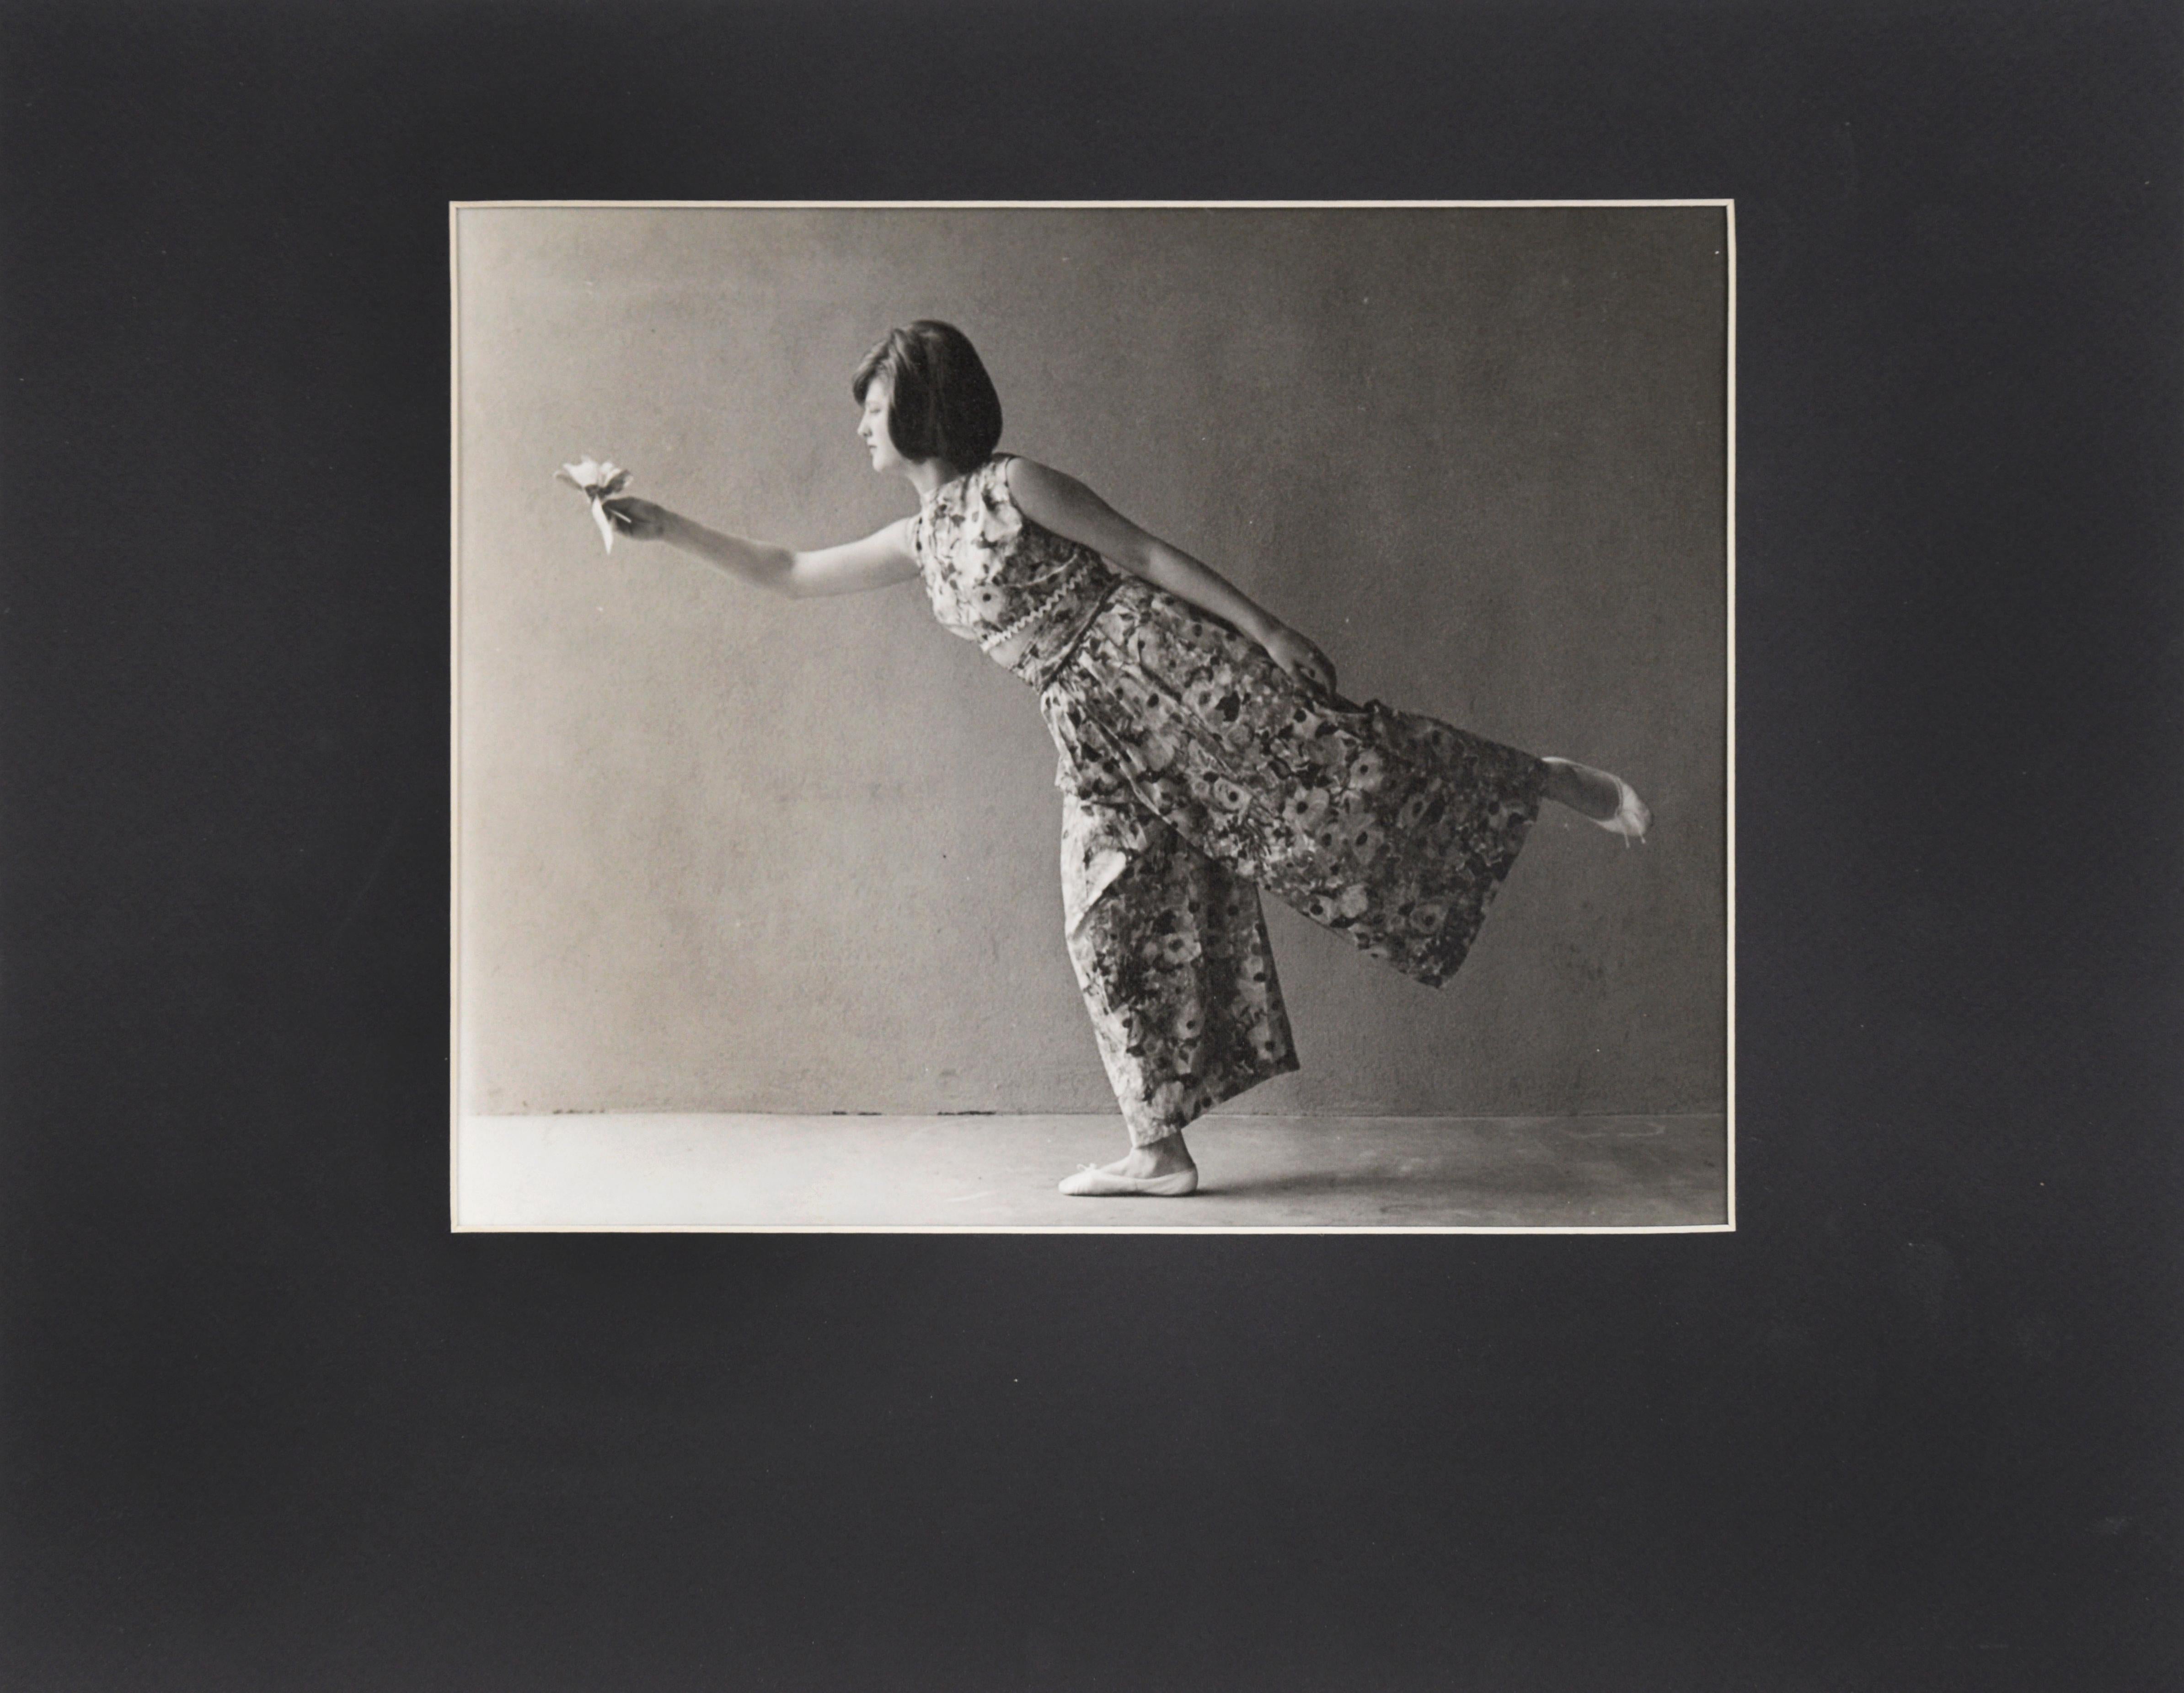 Frau in Ballettpose, die eine Blume hält - San Francisco Richard Edwards